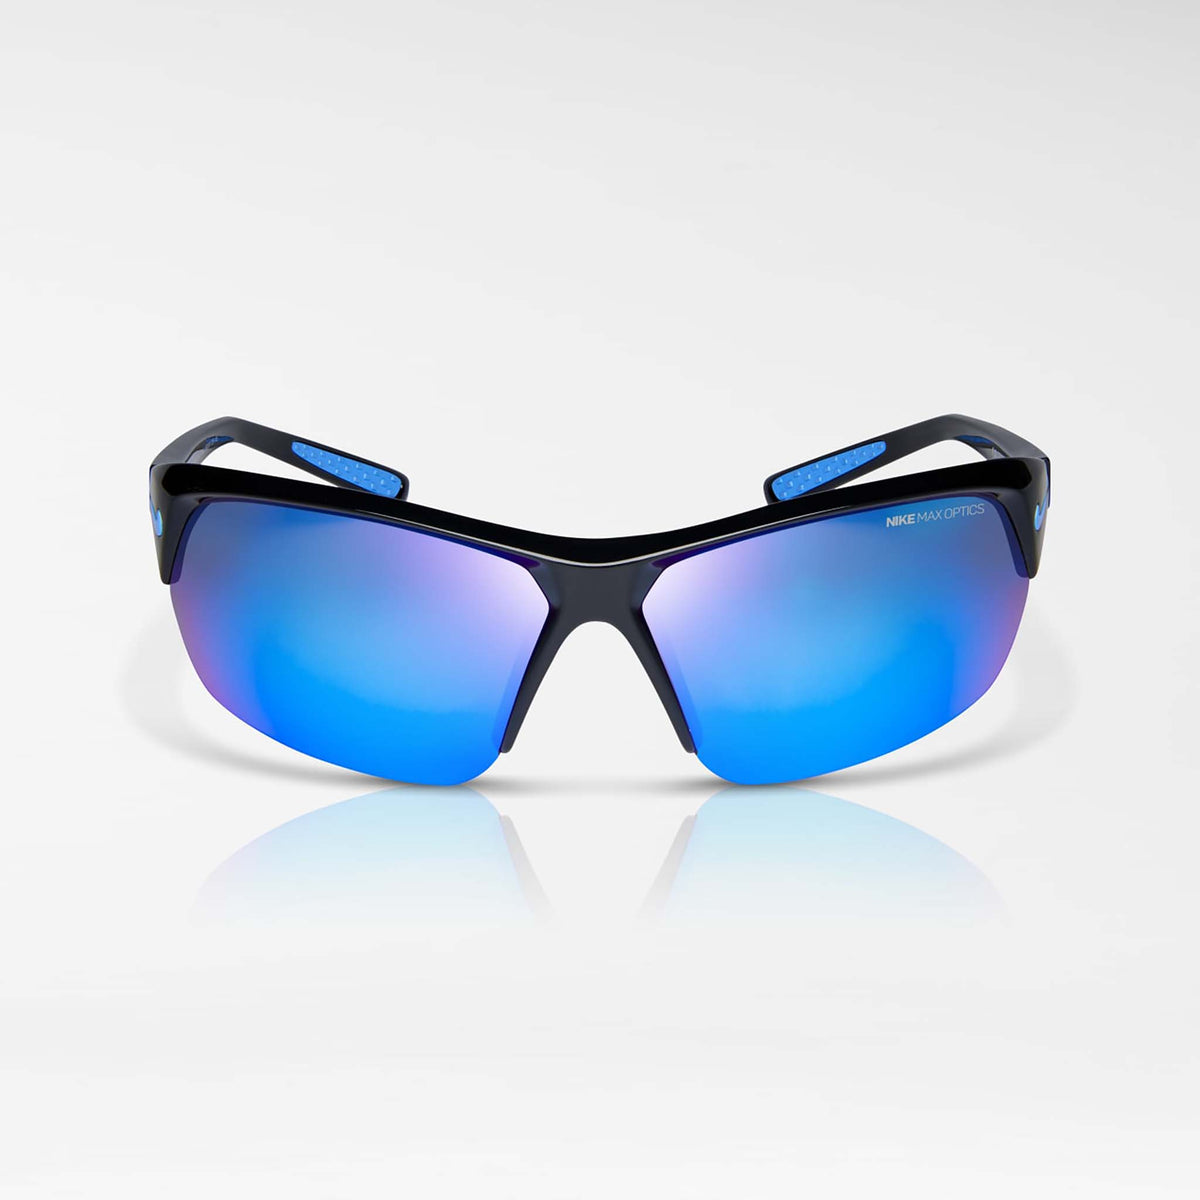 Nike Skylon Ace lunettes de soleil sport noir bleu miroir face